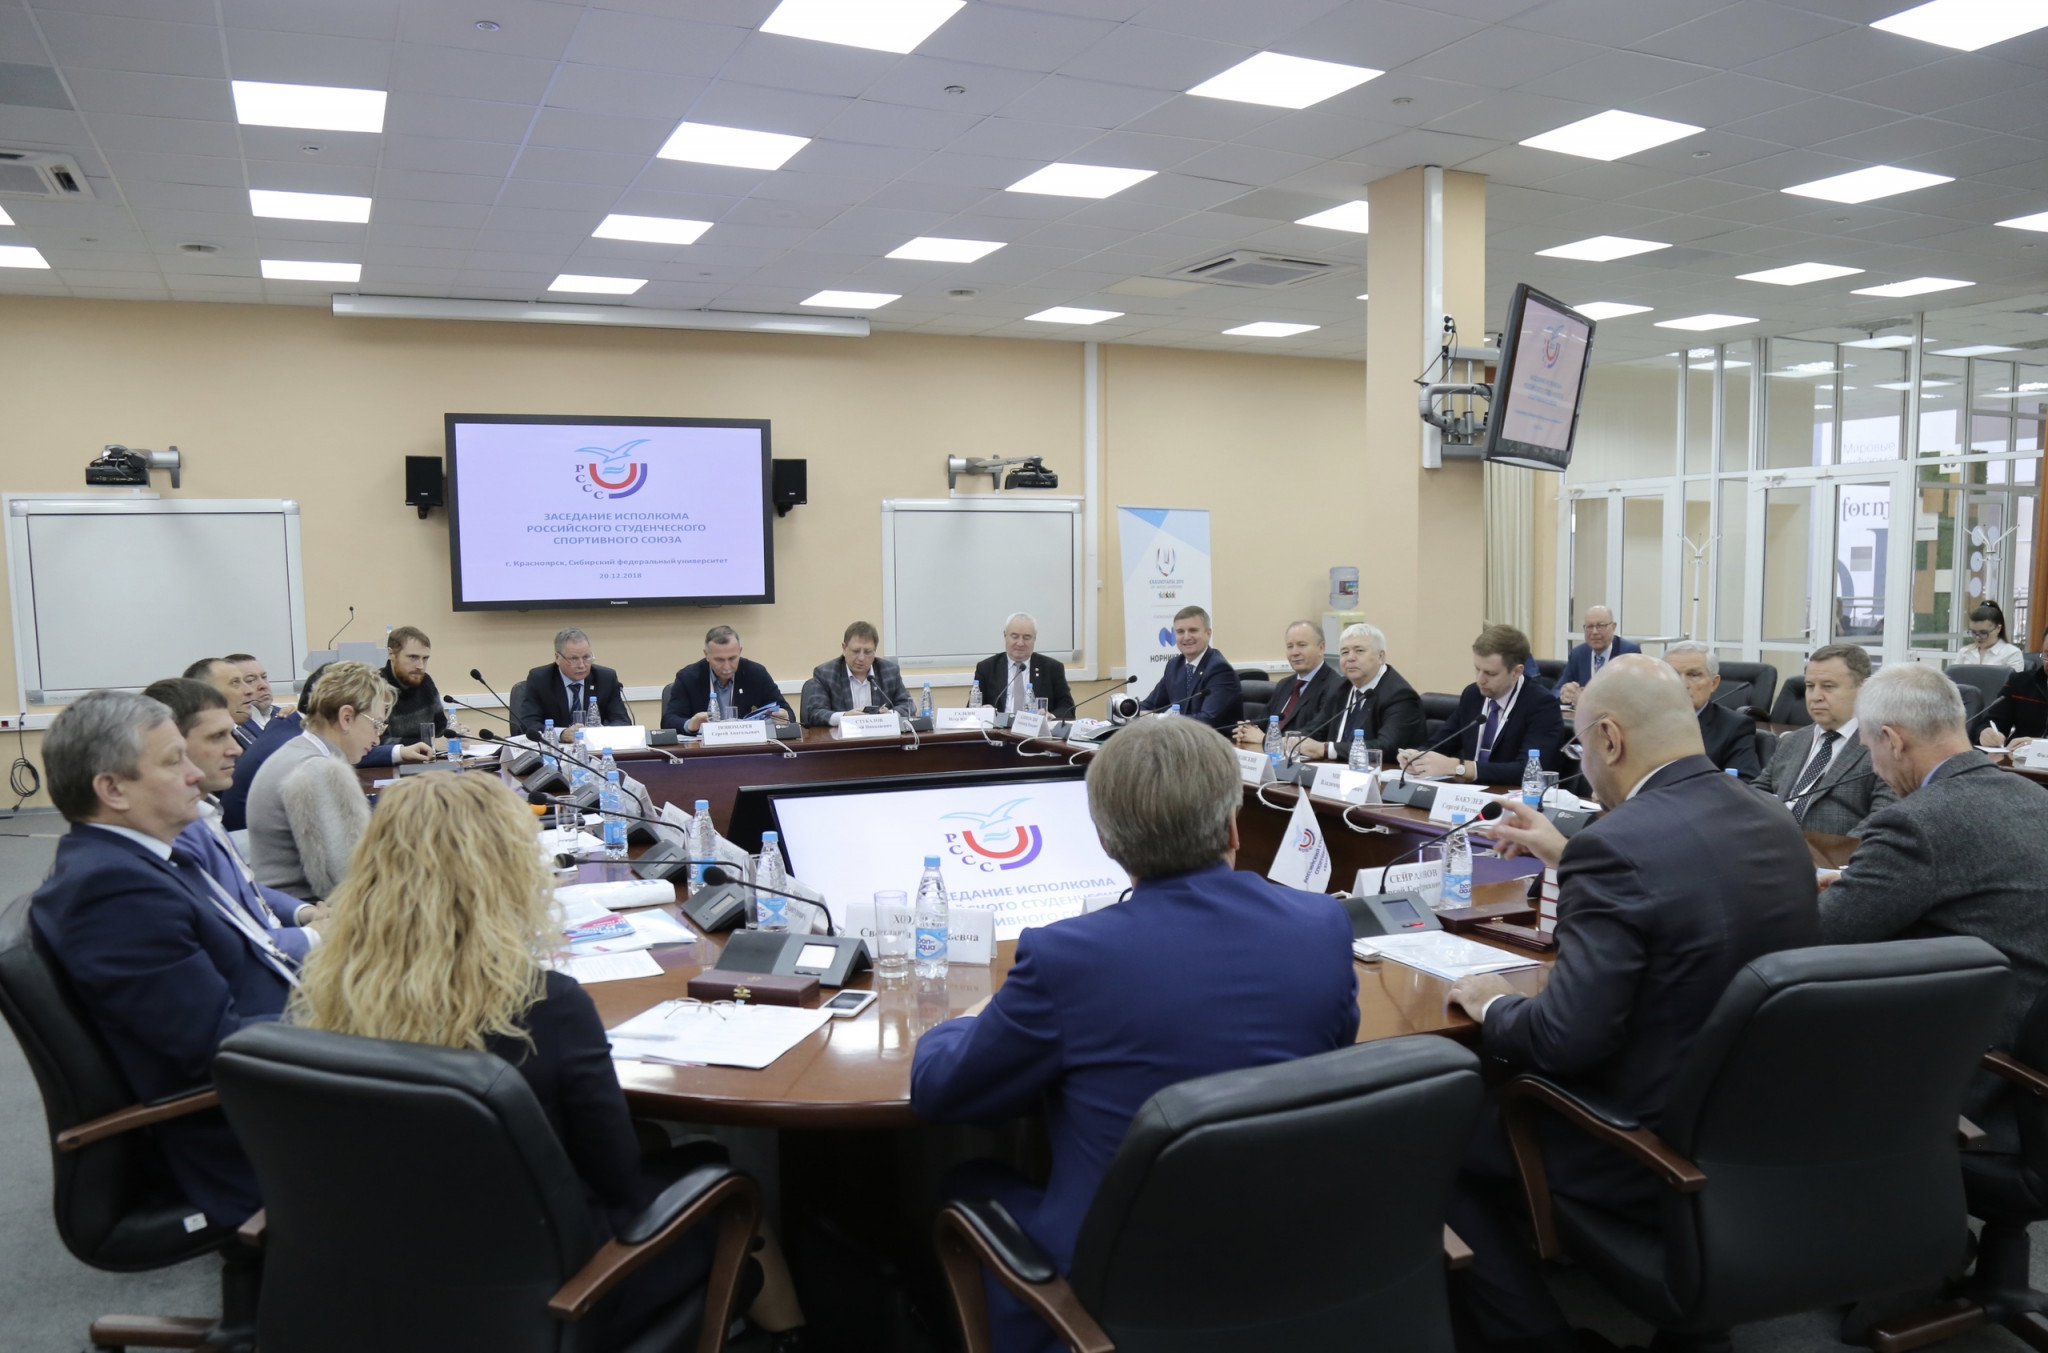 Krasnoyarsk 2019 preparations on course, head of Universiade directorate declares as final countdown begins